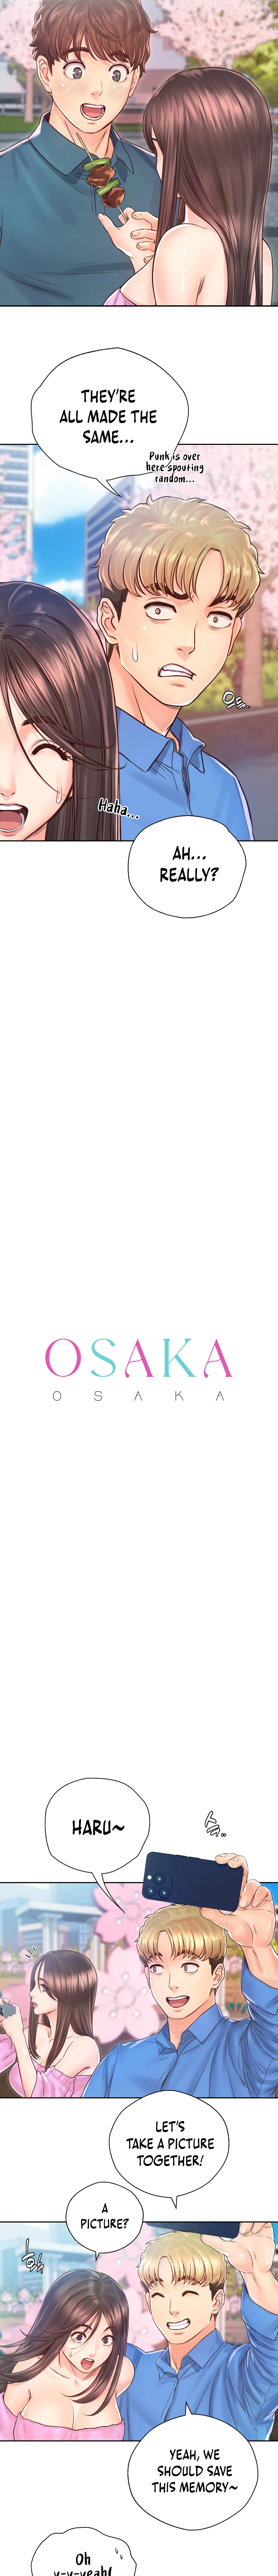 Osaka - Chapter 23 Page 4